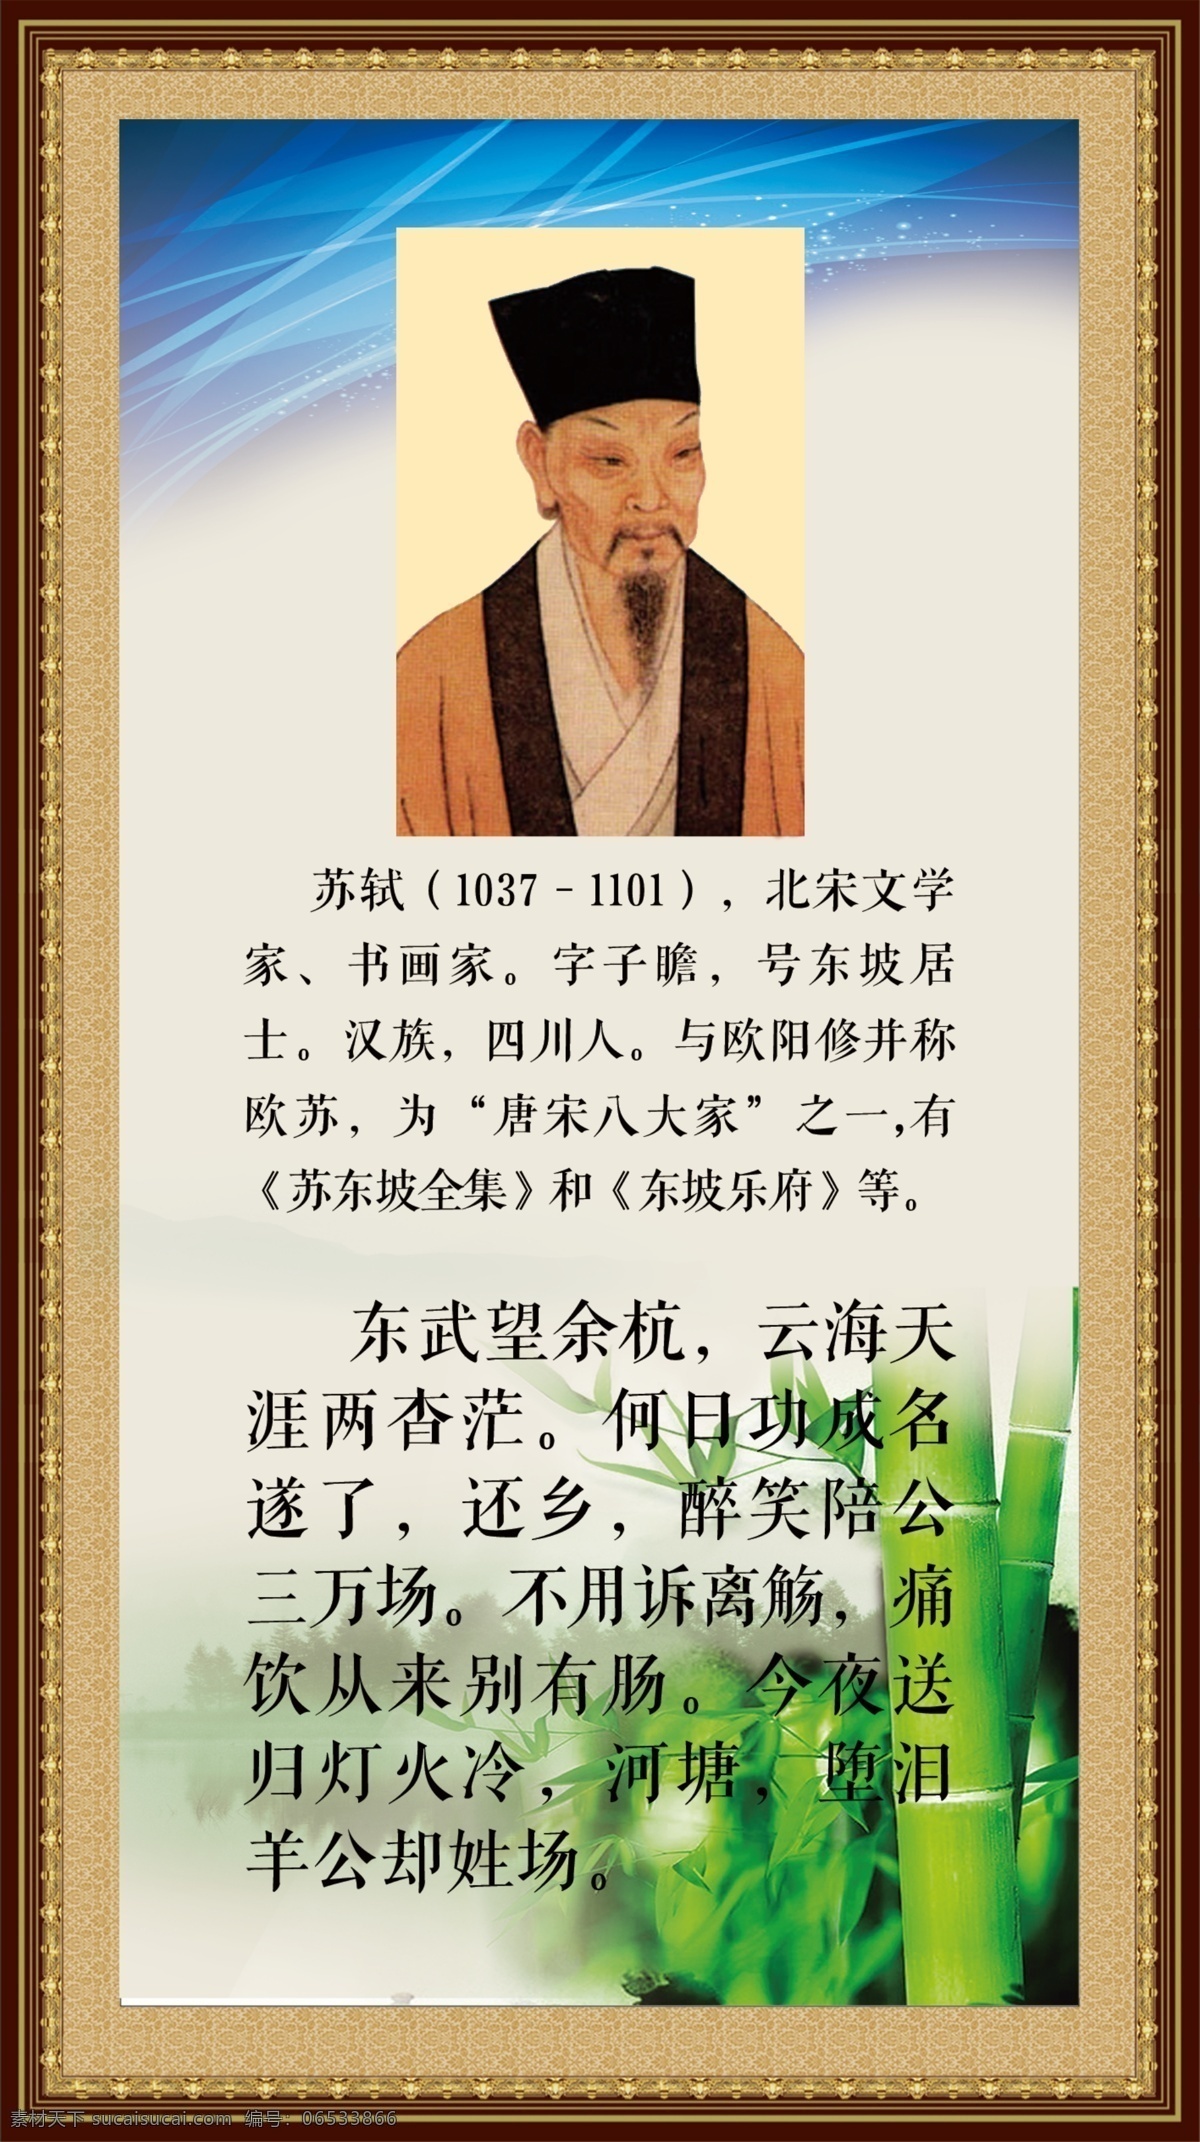 苏轼宣传画 苏轼 名人 宣传画 事迹 学校 展板模板 广告设计模板 源文件